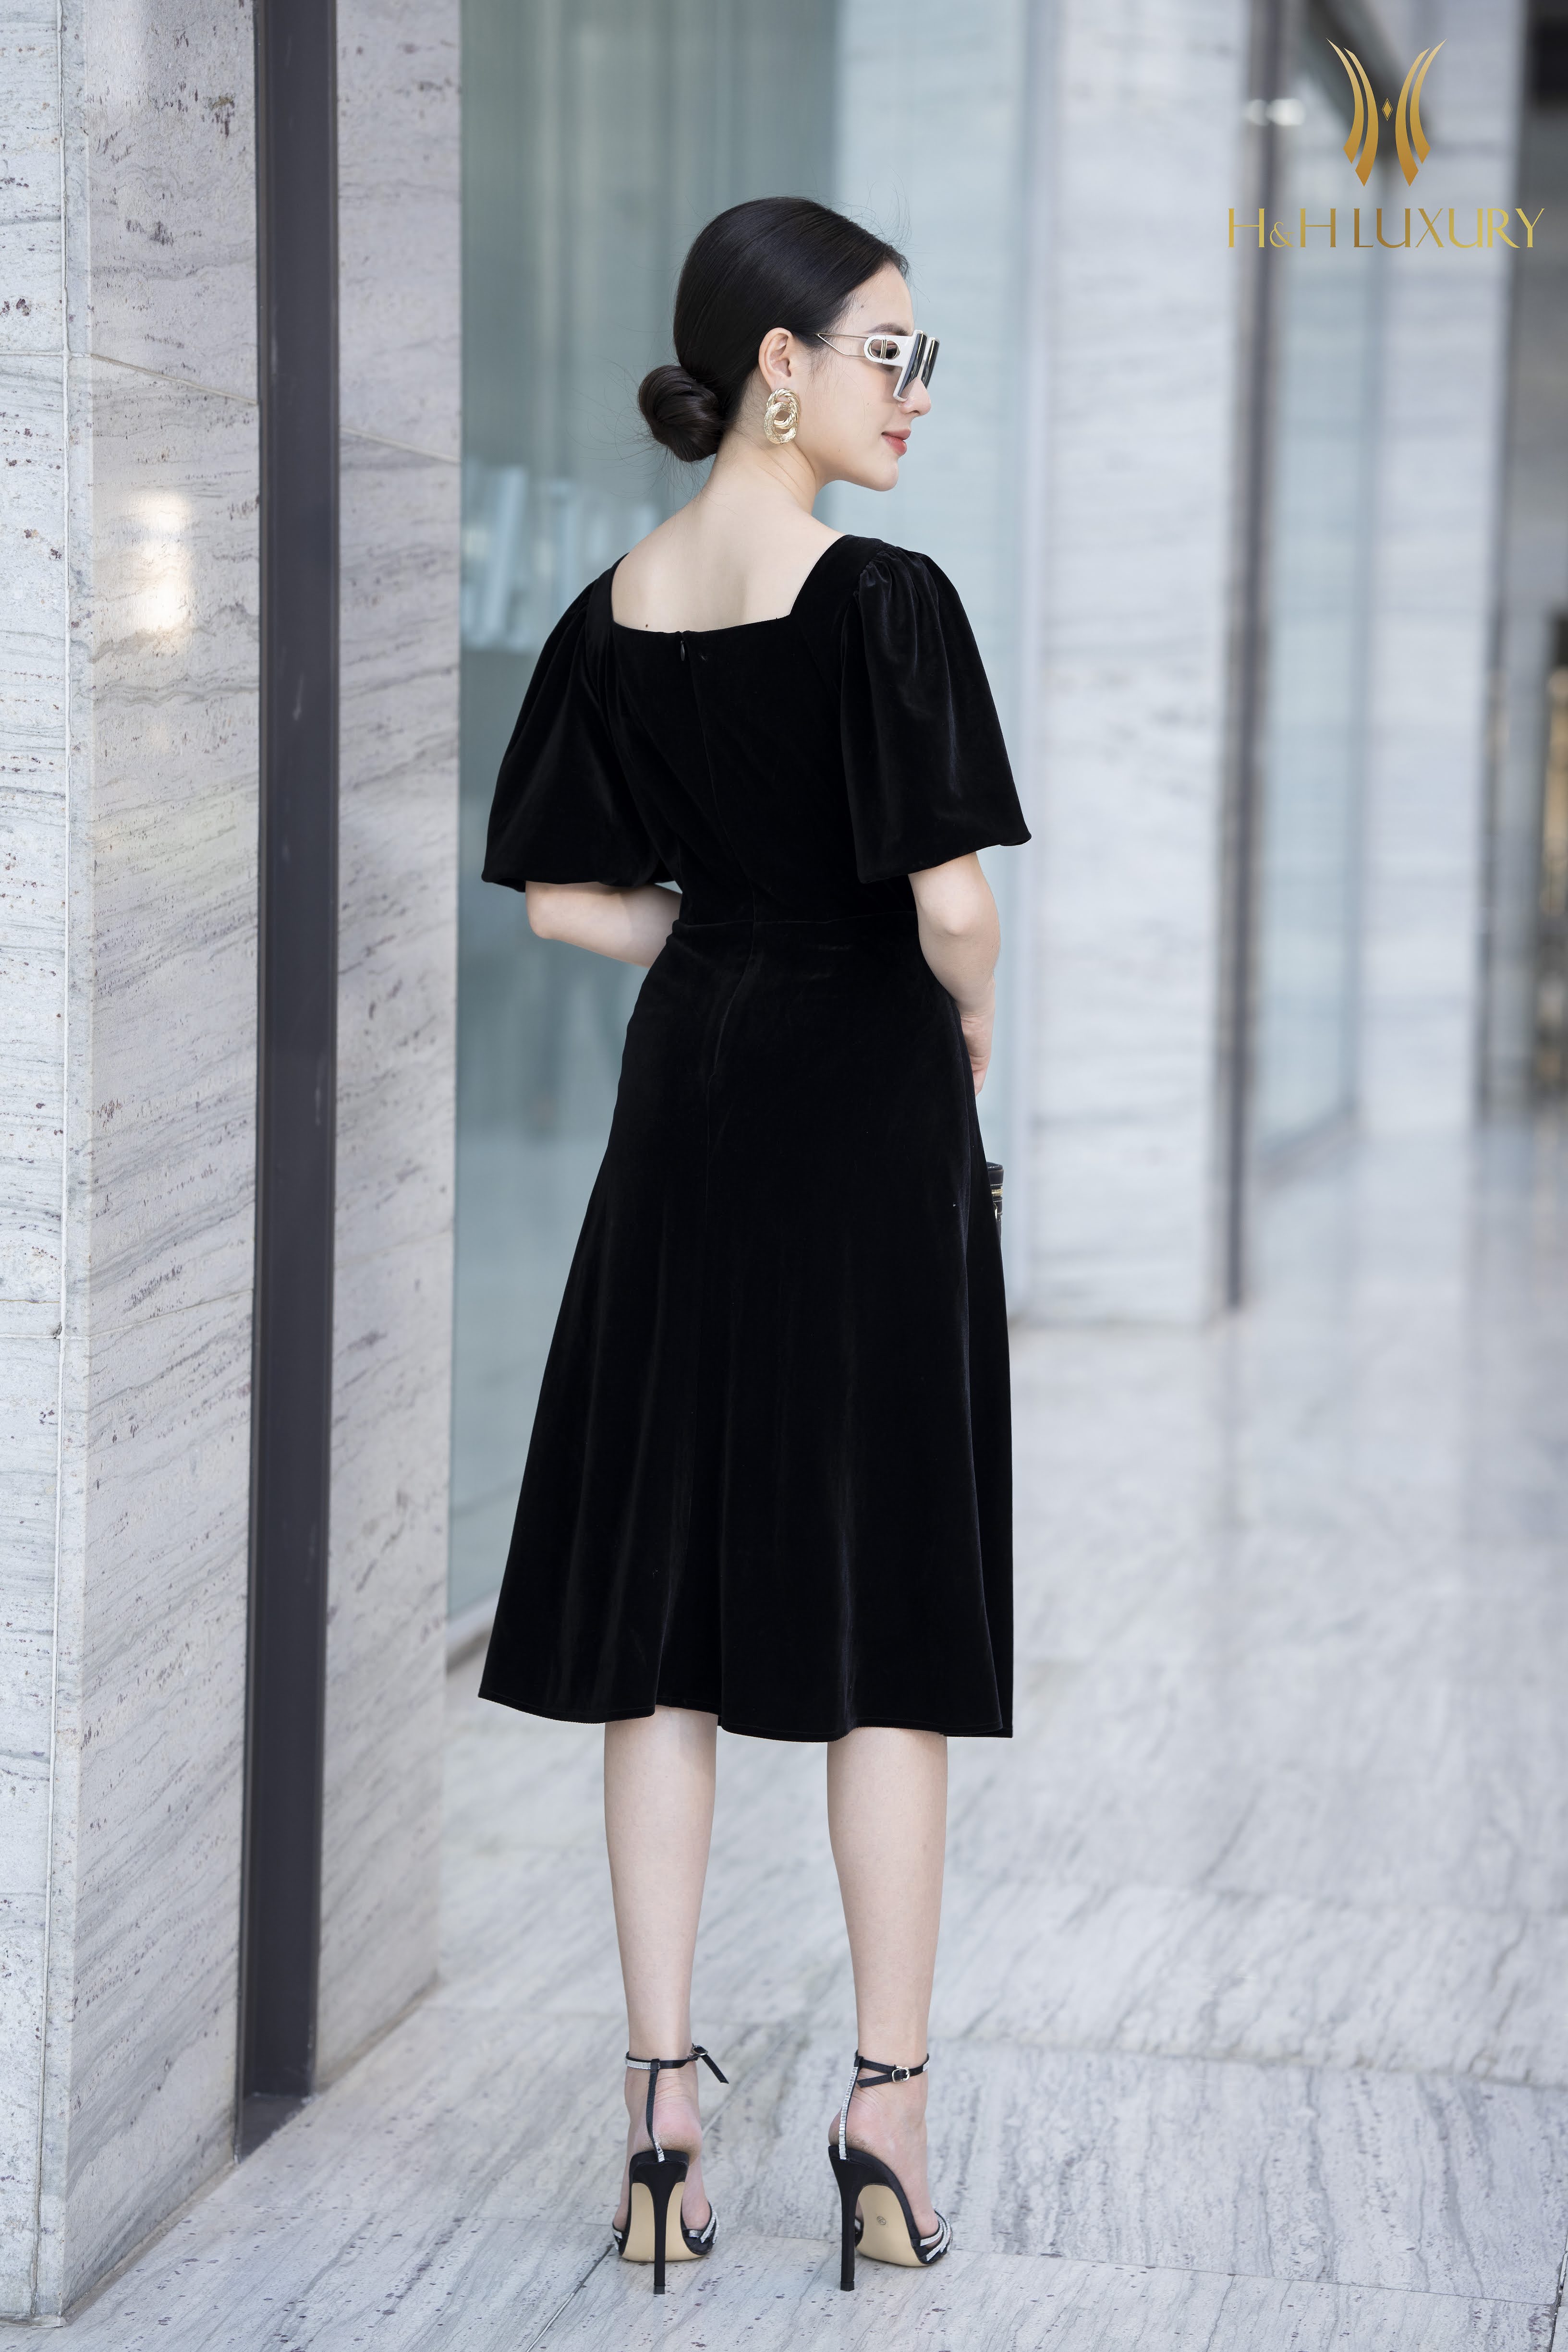 Đầm xòe màu đen thiết kế cổ vuông đính ngọc trai  Đầm xòe đẹp